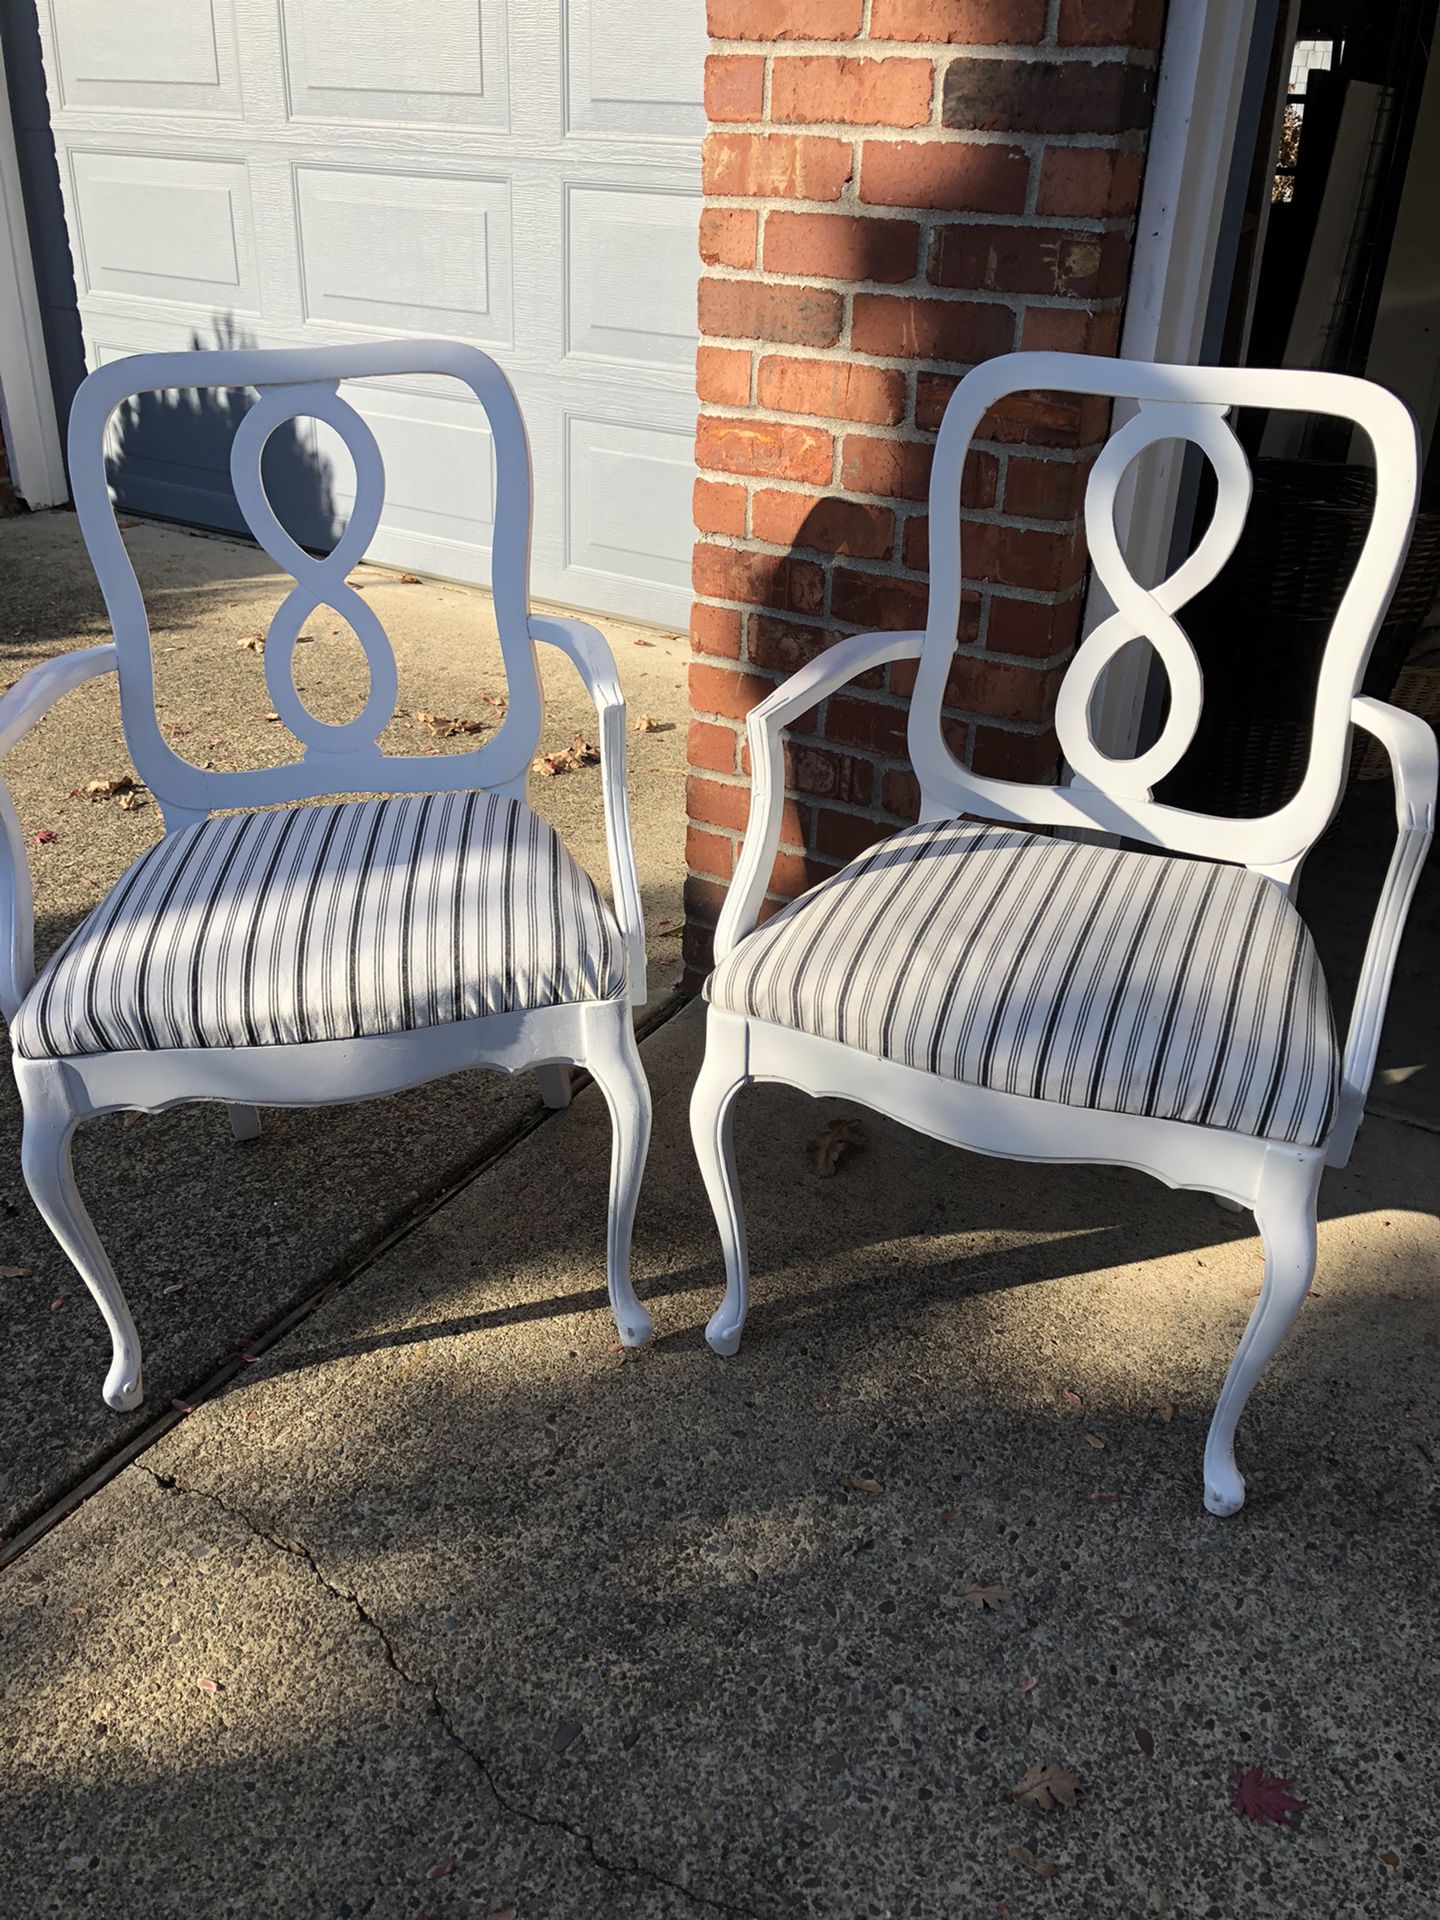 Matching white chairs